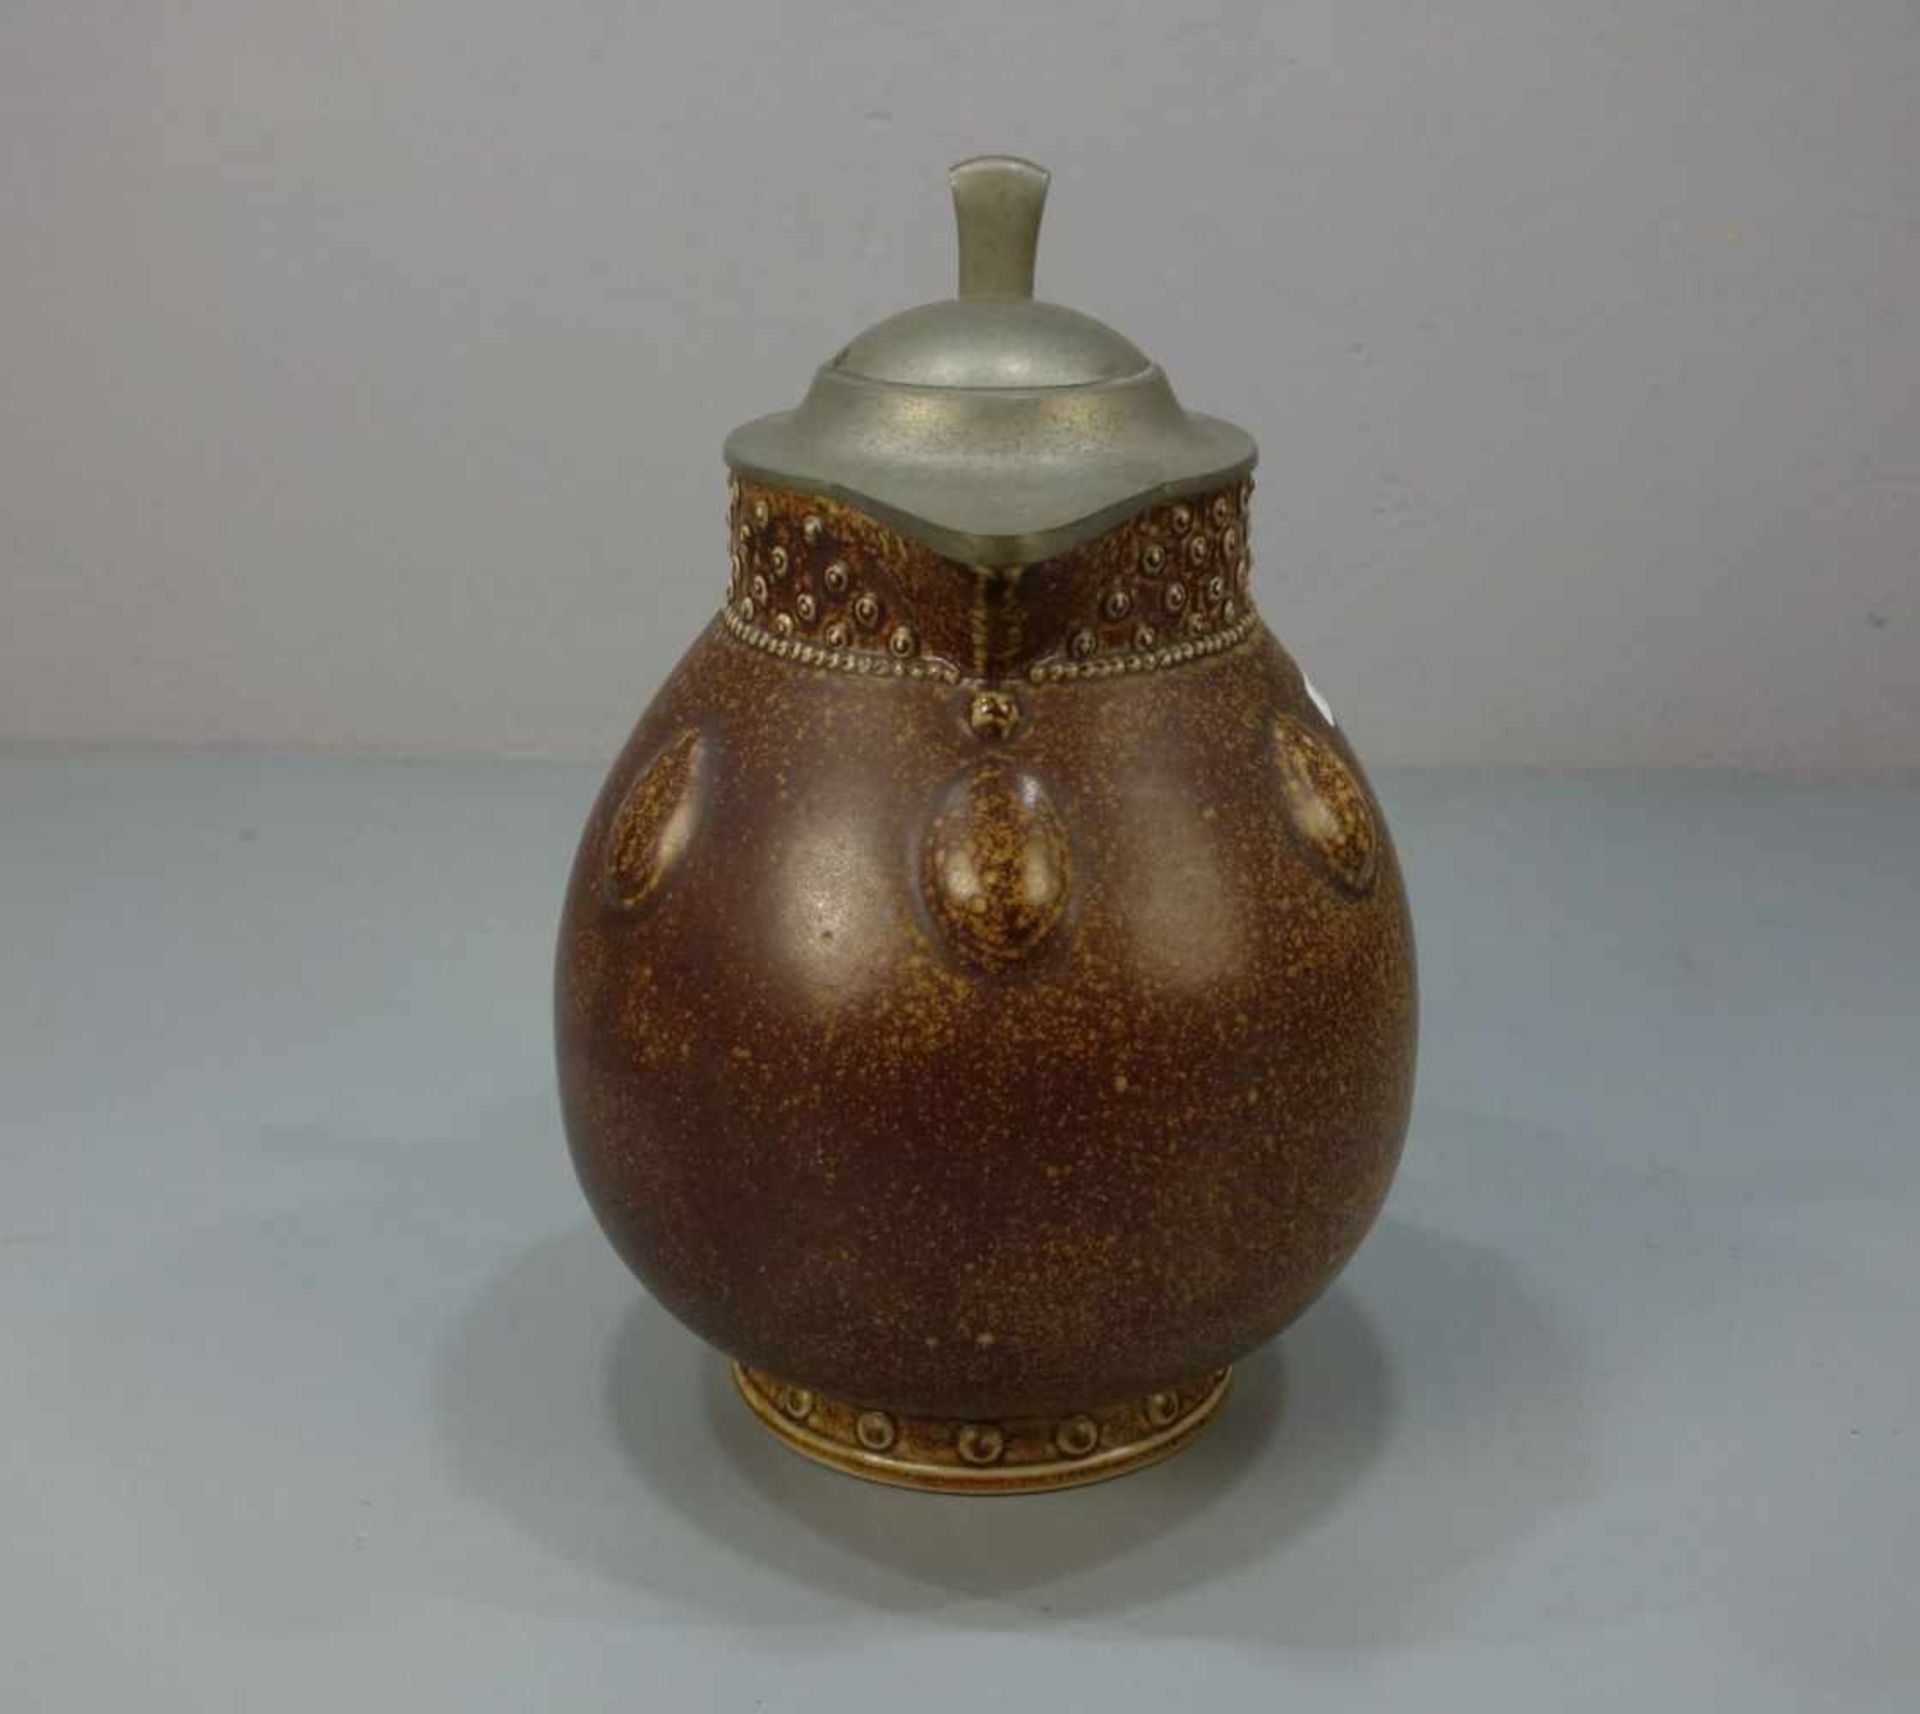 JUGENDSTIL KRUG / KANNE / art nouveau ceramic jug, Keramik, Manufaktur Reinhold Merkelbach, - Image 2 of 5